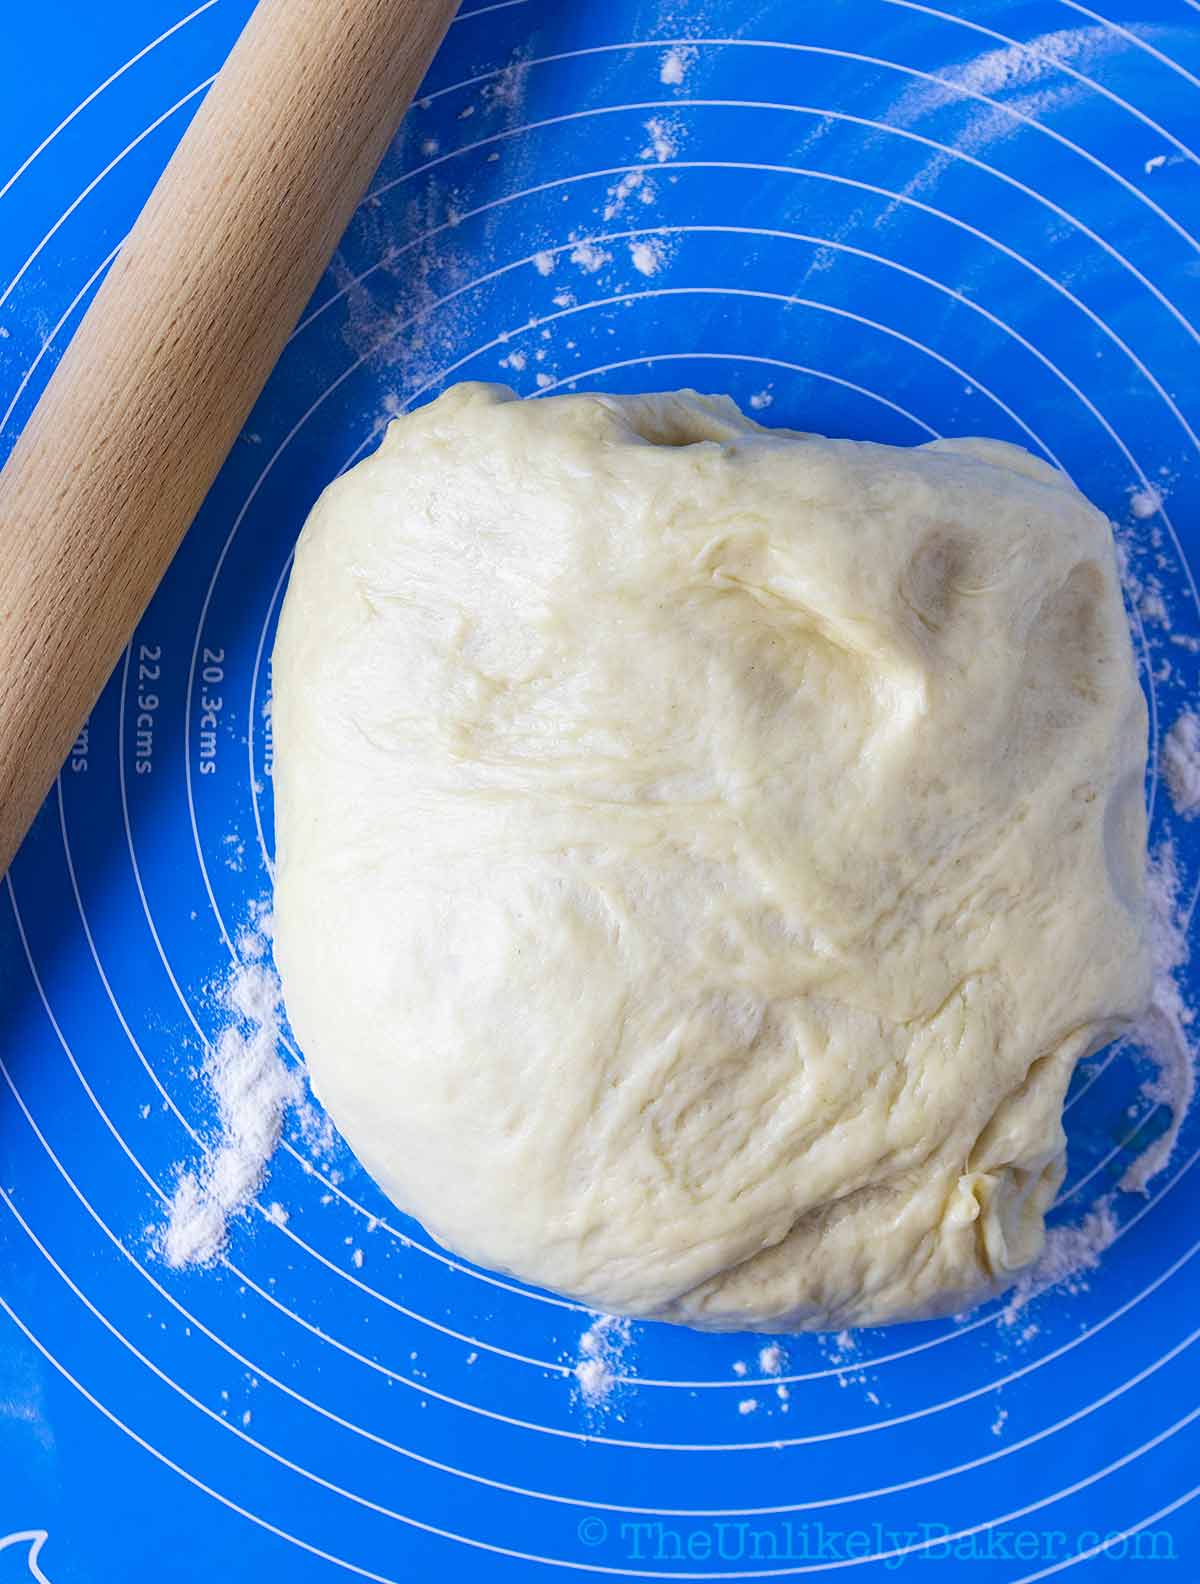 Bread dough on a lightly floured surface.